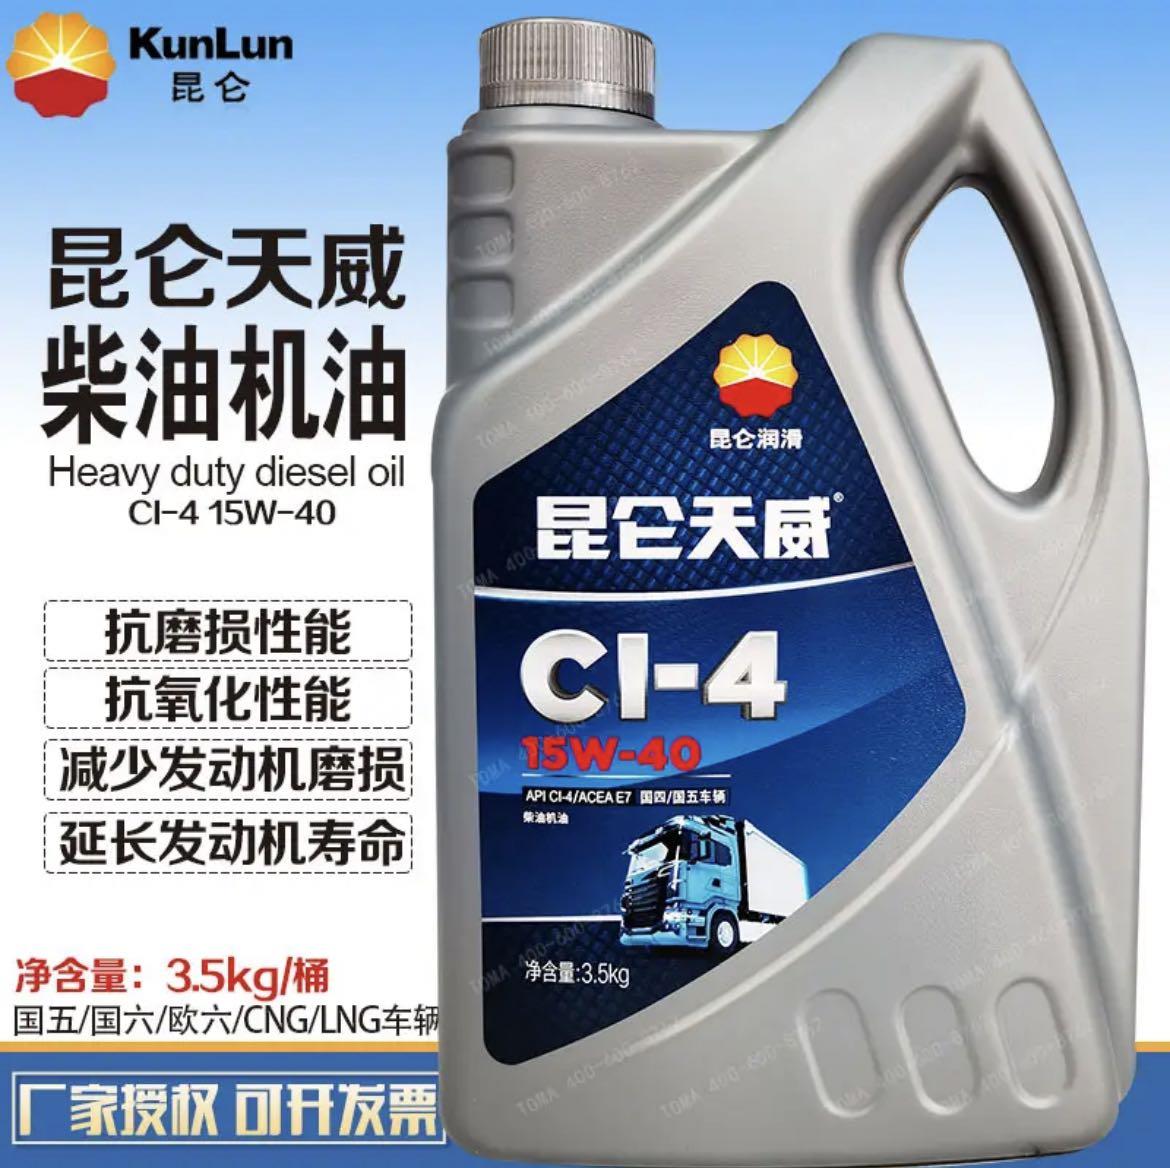 昆仑润滑油一级代理商 昆仑柴油机油CI-4 3.5kg 实力商家 库存充足